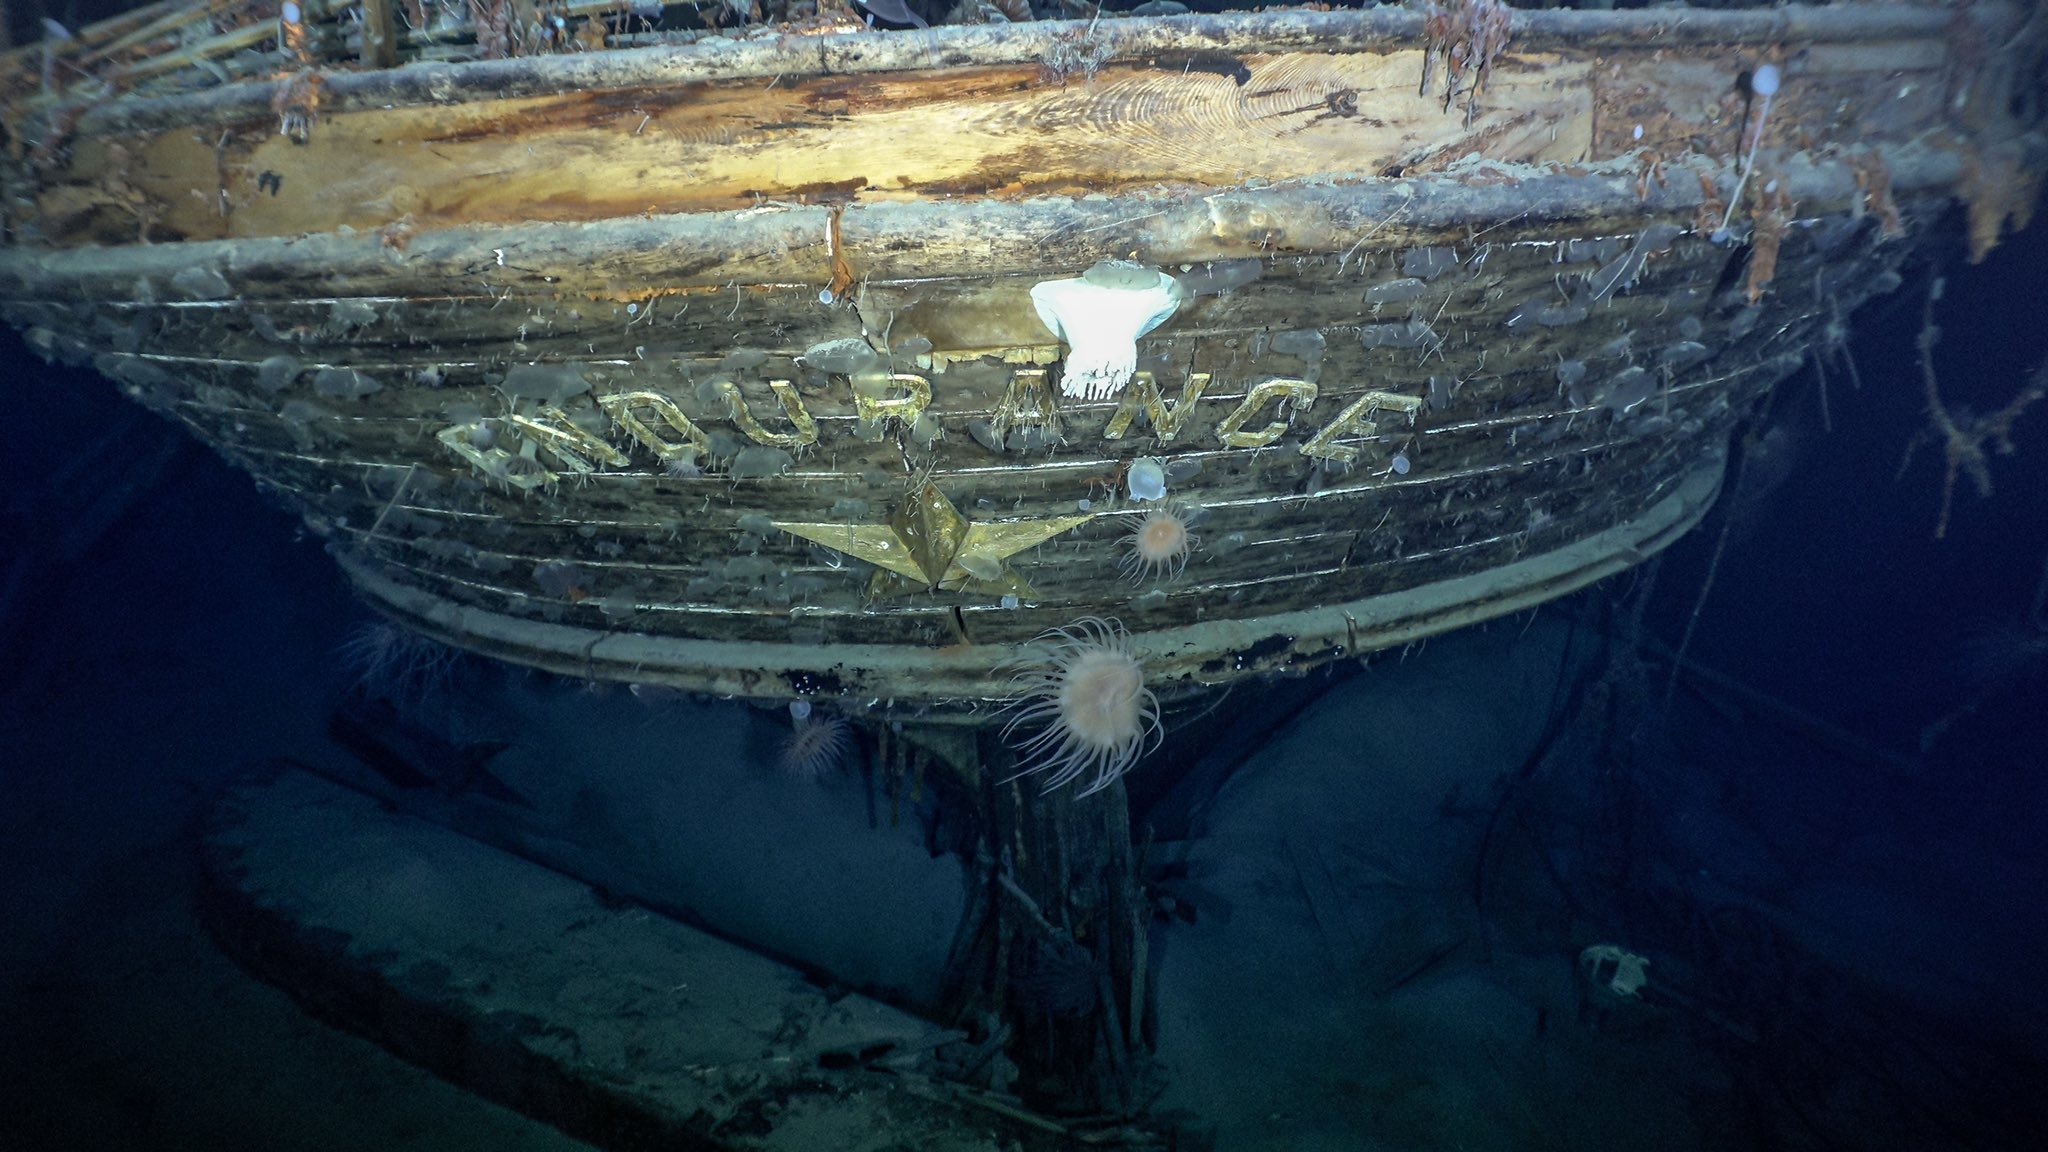 Descubrimiento en la Ántartida: aparece el Endurance, el mítico barco hundido de Shackleton